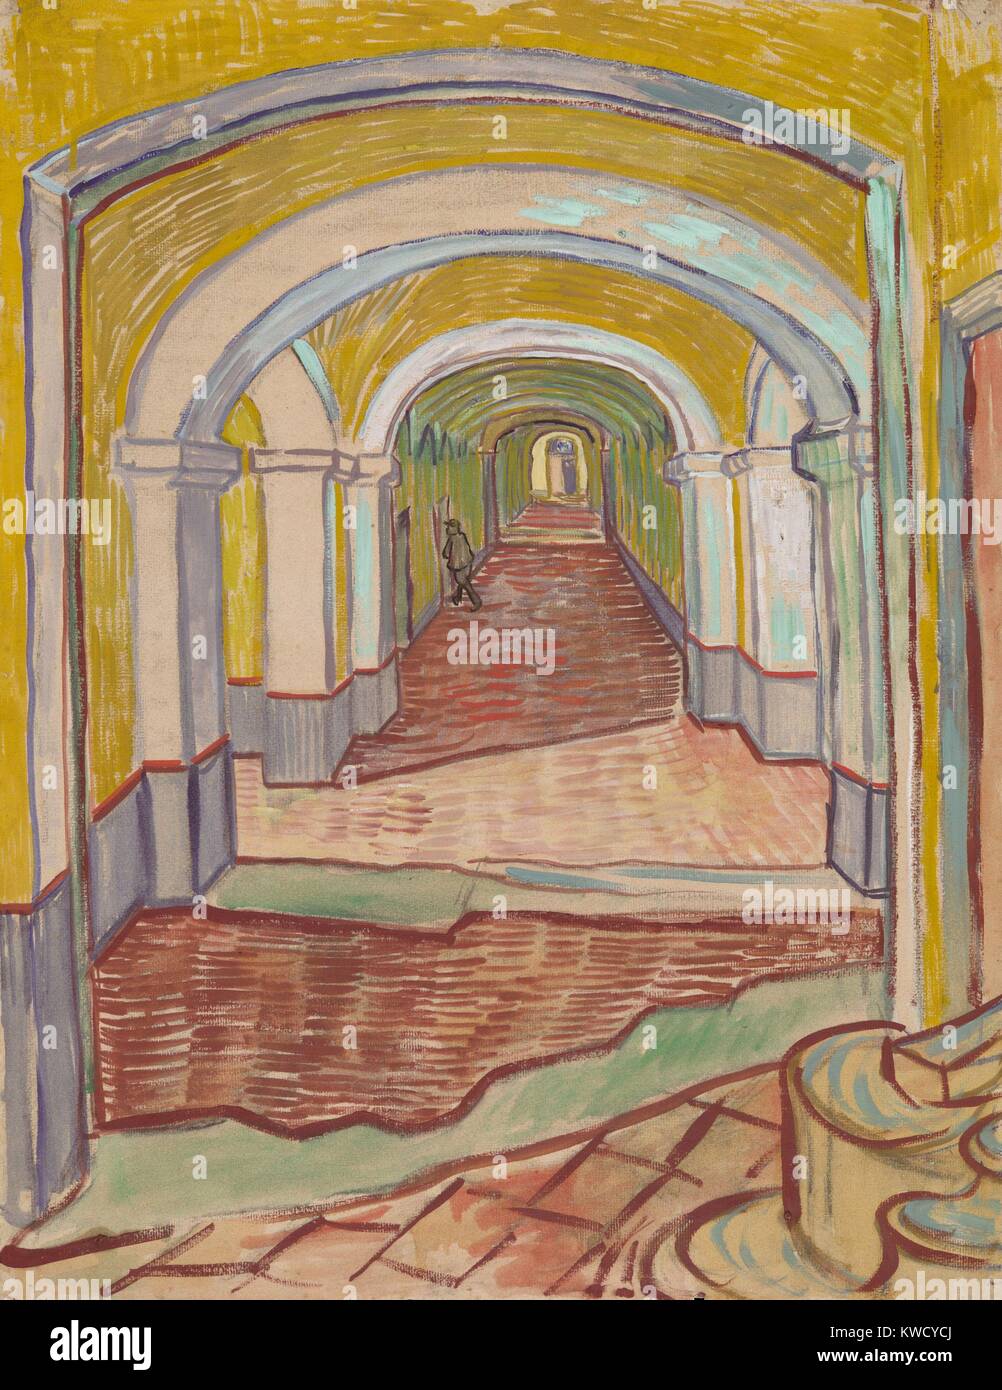 Dans le couloir de l'asile, par Vincent Van Gogh, 1889, peinture postimpressionniste néerlandais. Ce travail technique mixte d'huile et couleur craie noire sur du papier rose, utilisé la perspective linéaire exagérées expressivement à peindre l'Asile De Saint-Rémy à Arles (BSLOC 2017 5 56) Banque D'Images